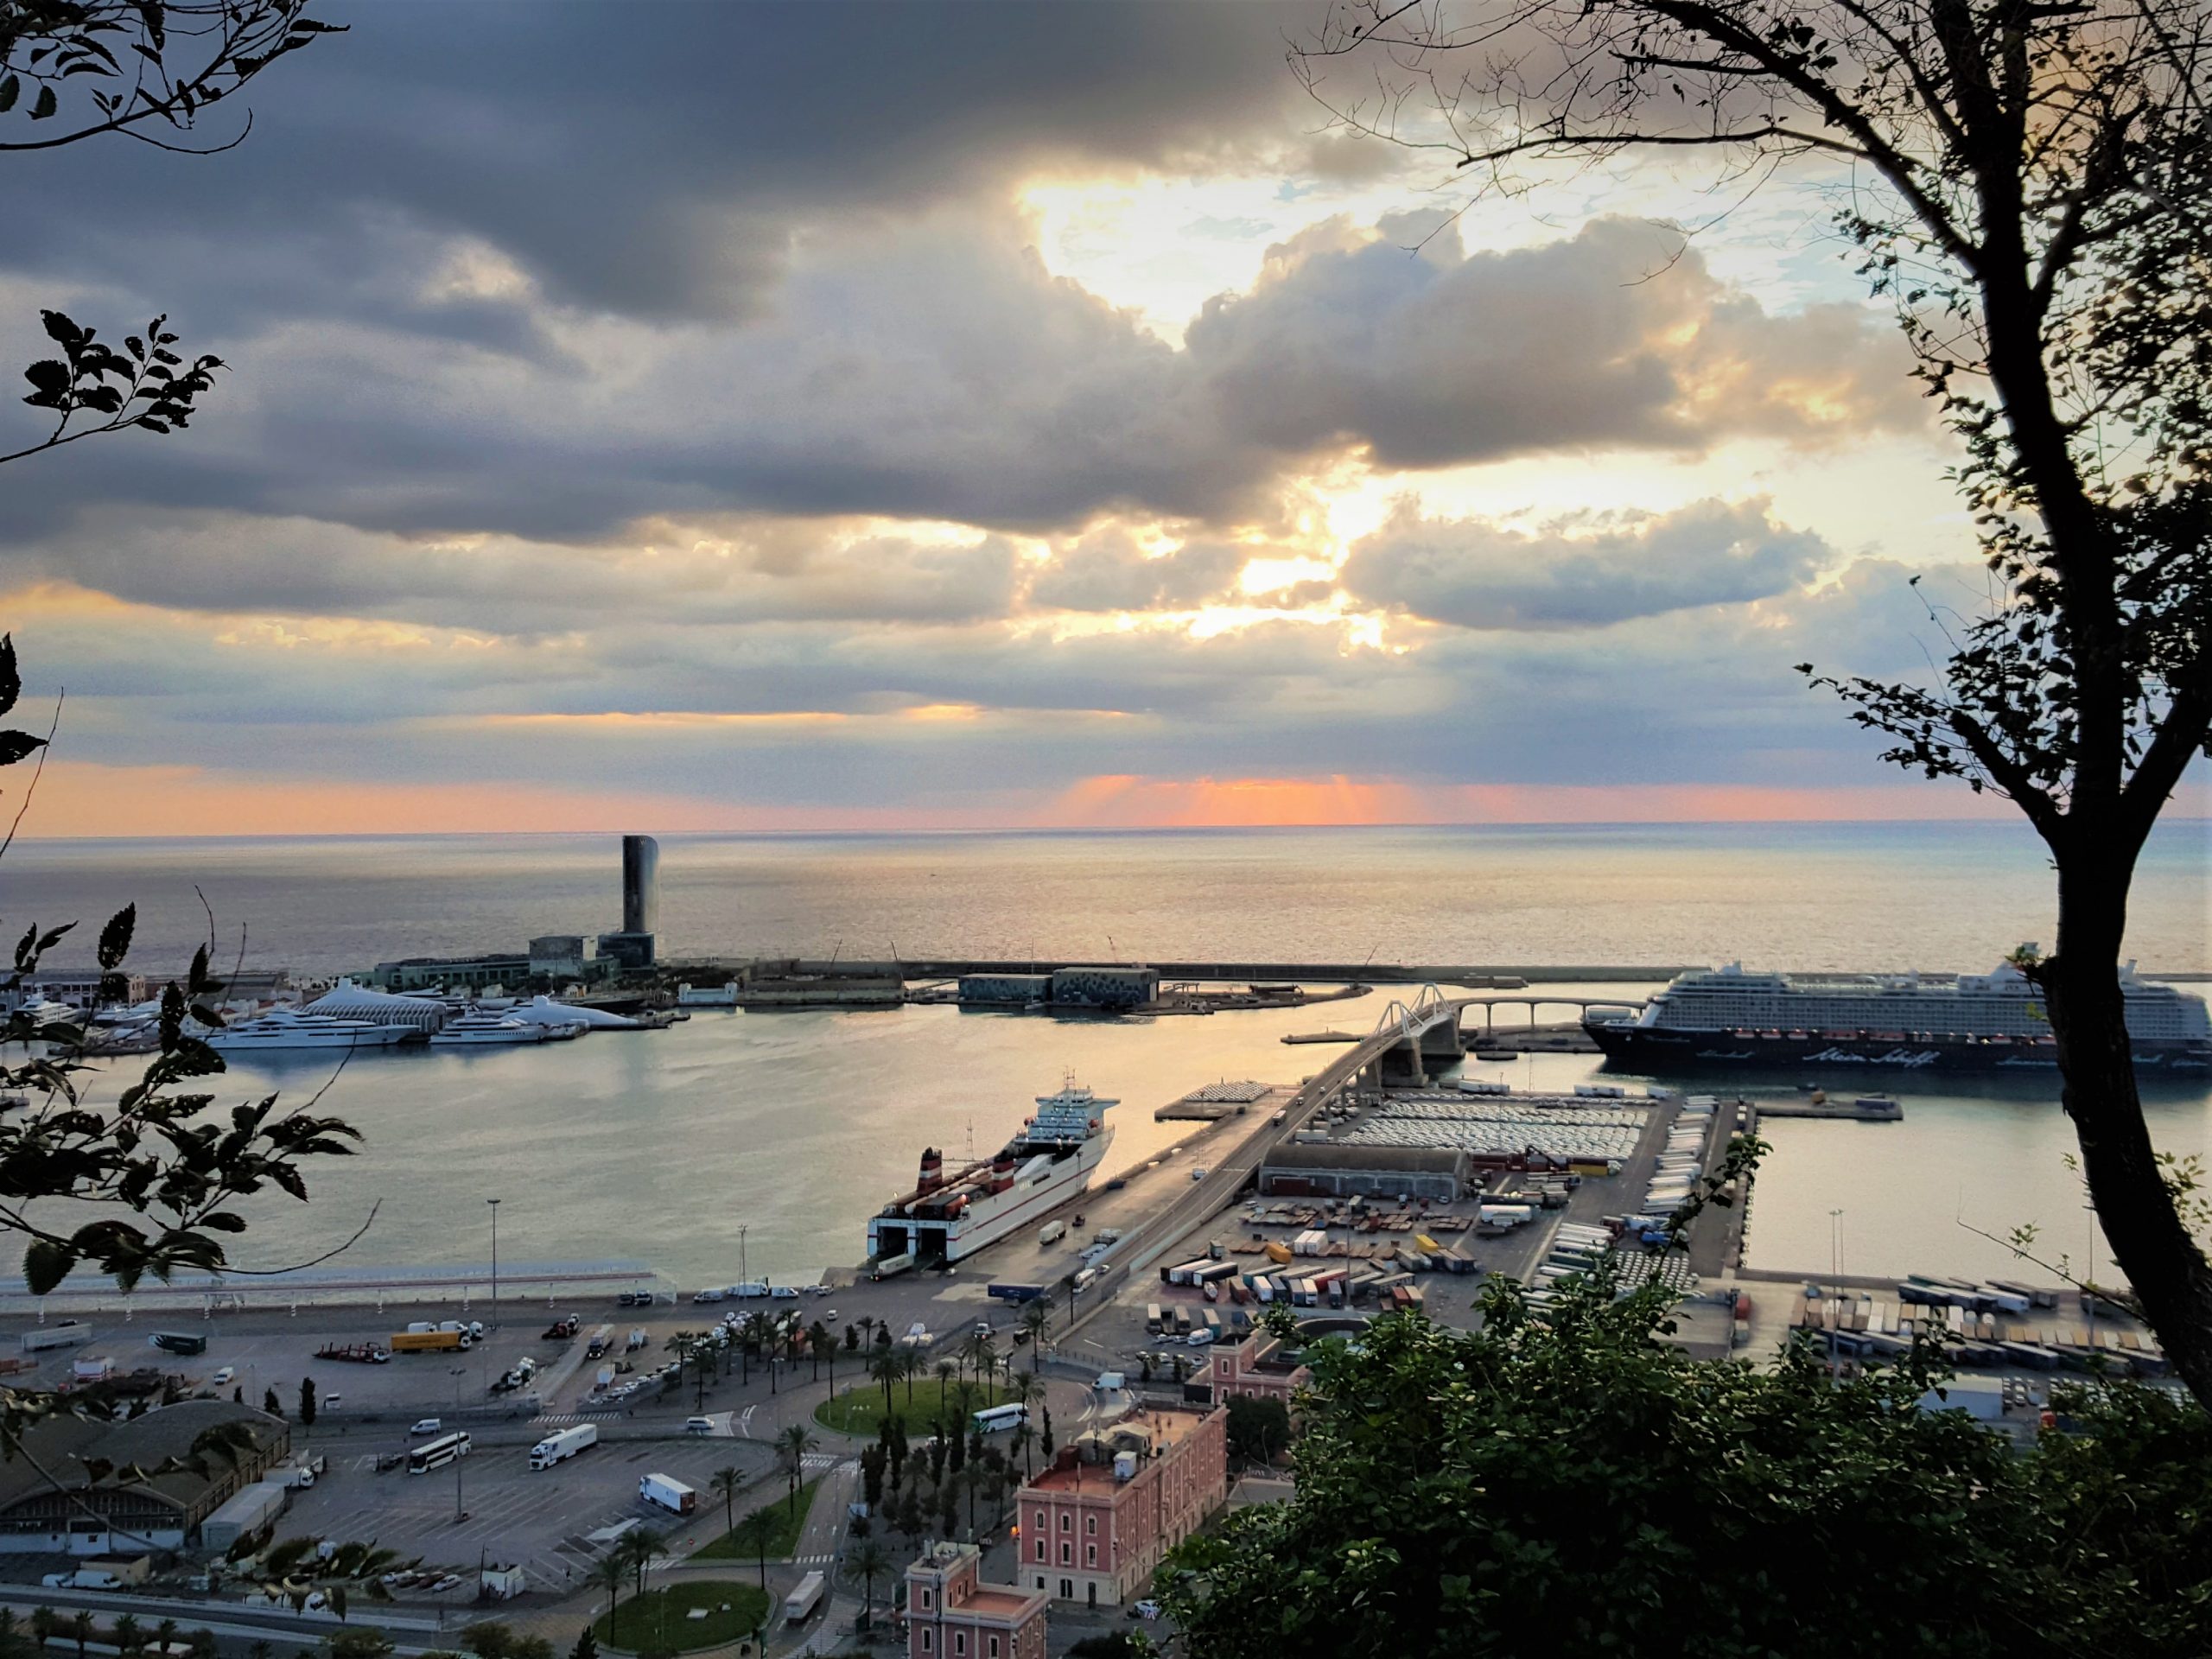 vista panoramica del puerto de Barcelona desde Montjuic al amanecer